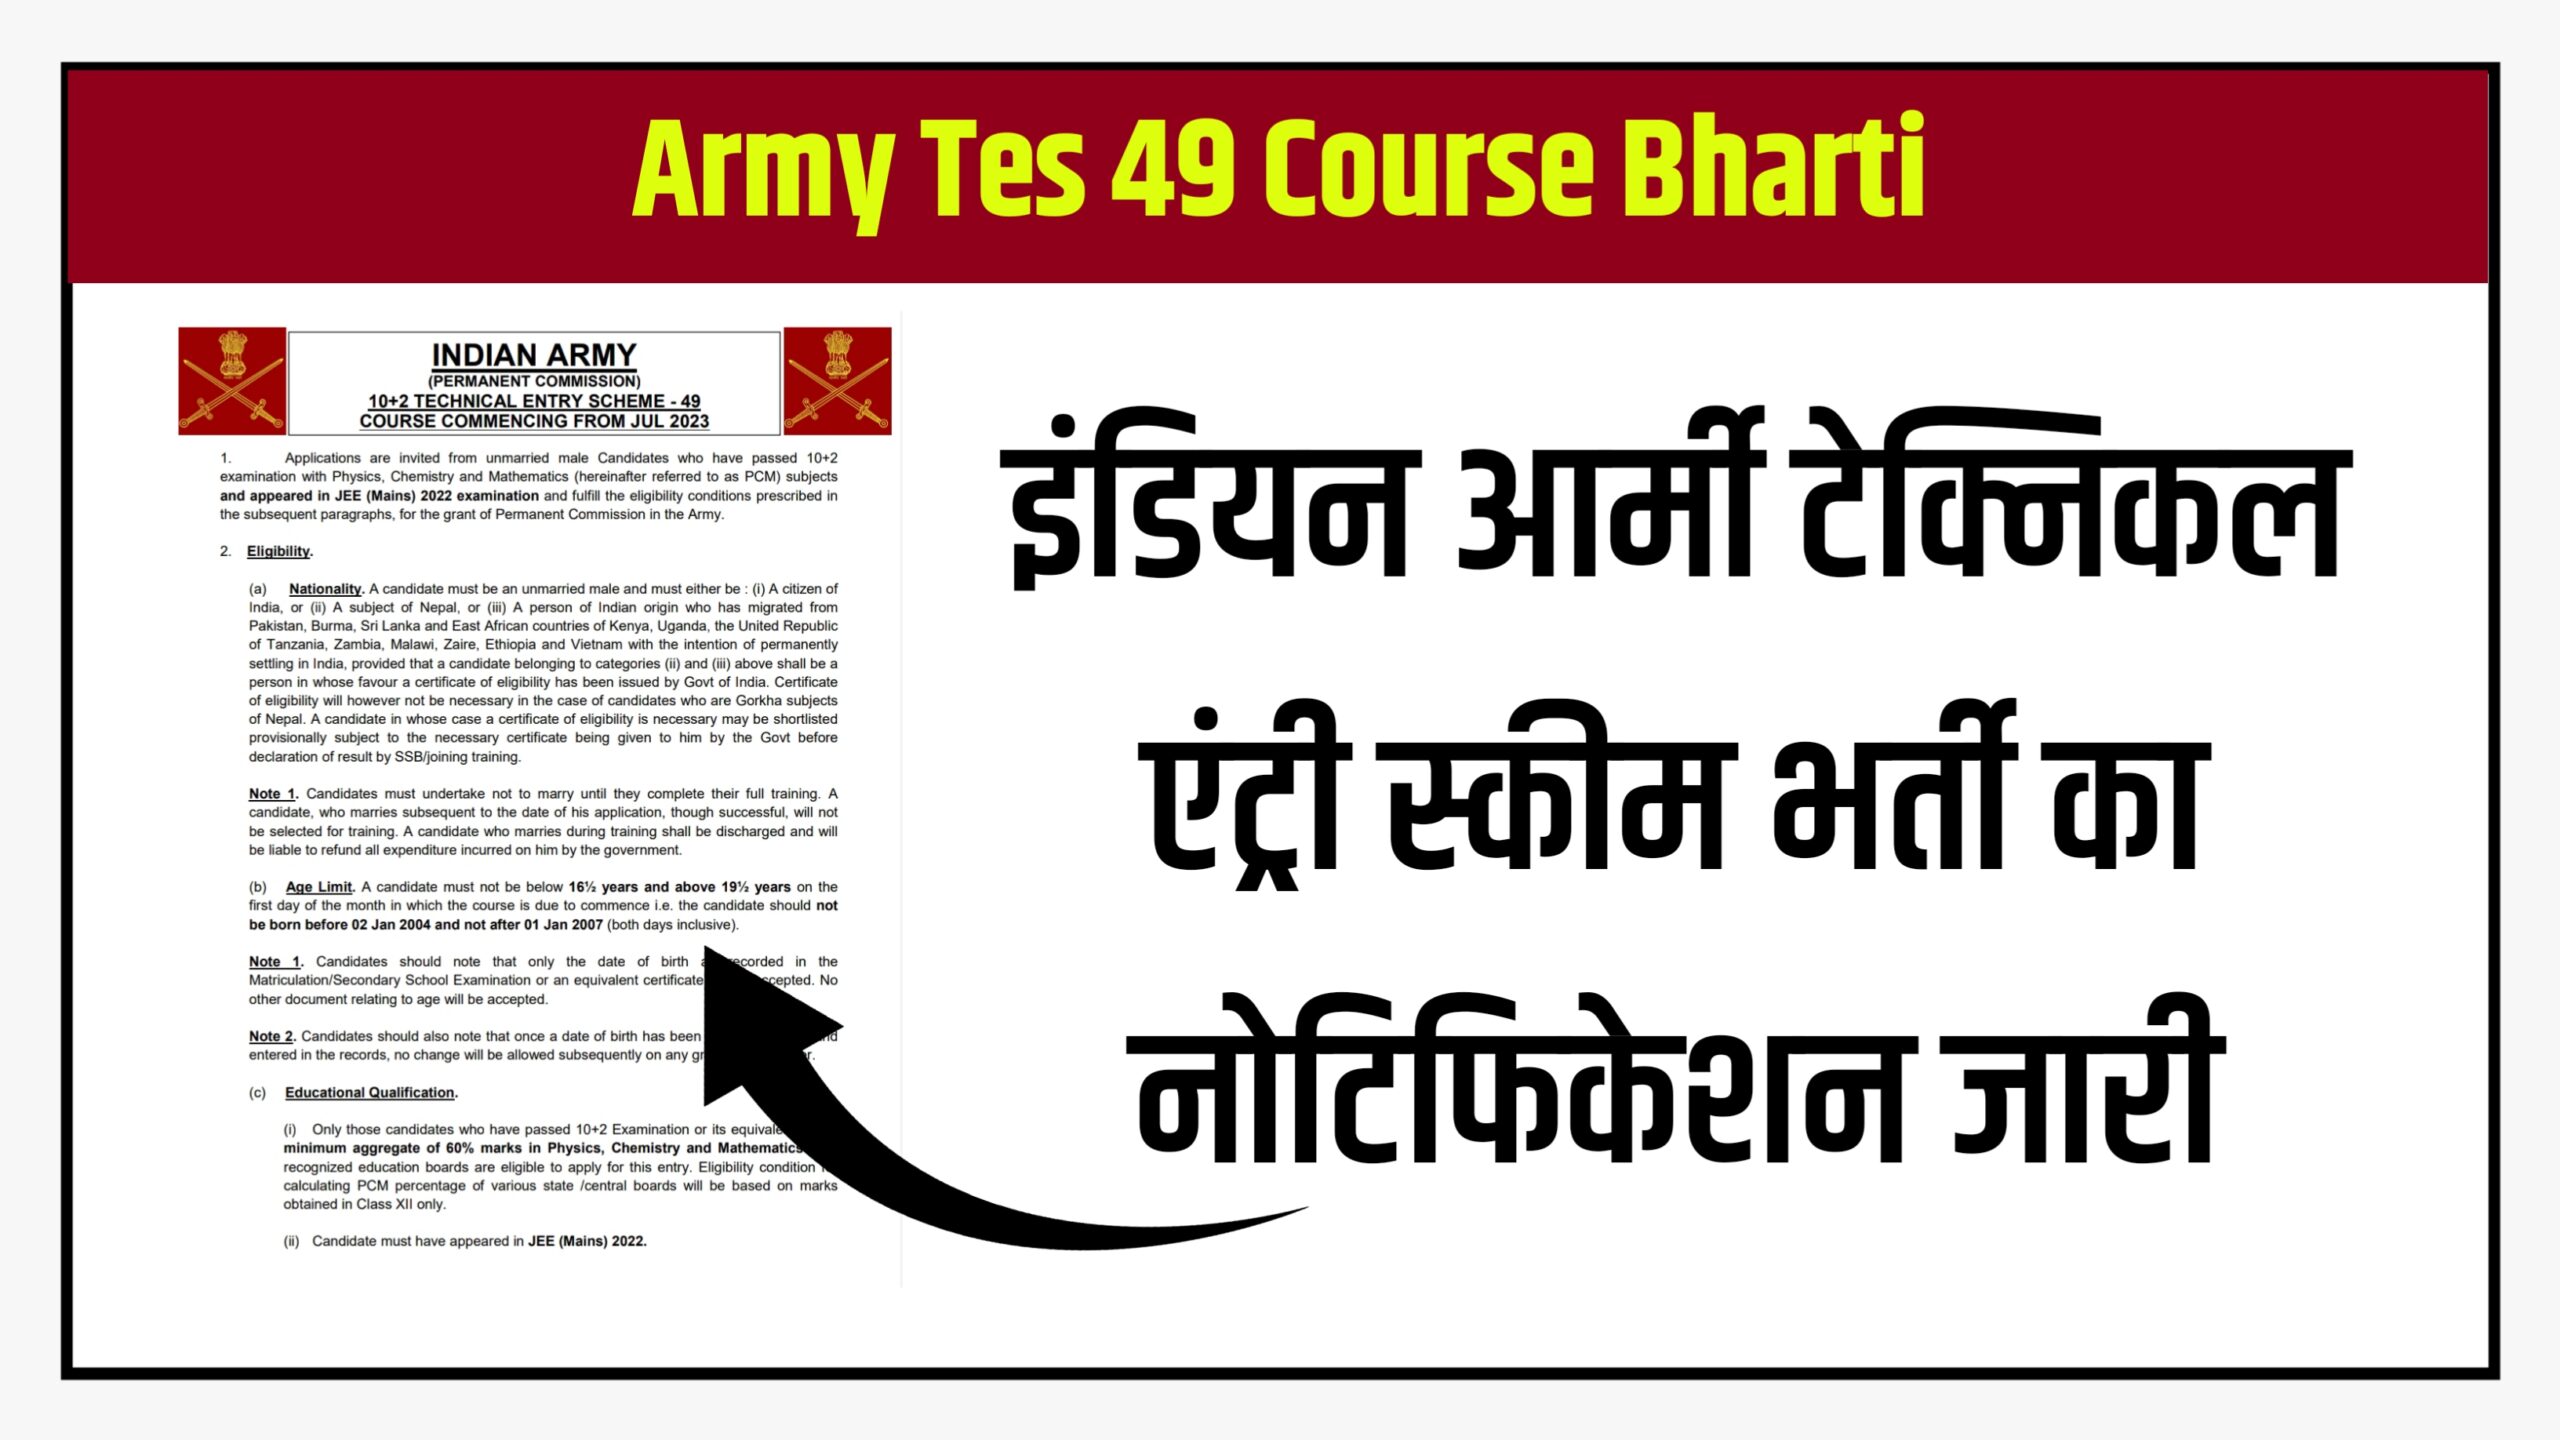 Army Tes 49 Course Bharti 2022 इंडियन आर्मी टेक्निकल एंट्री स्कीम भर्ती हेतु आवेदन शुरू